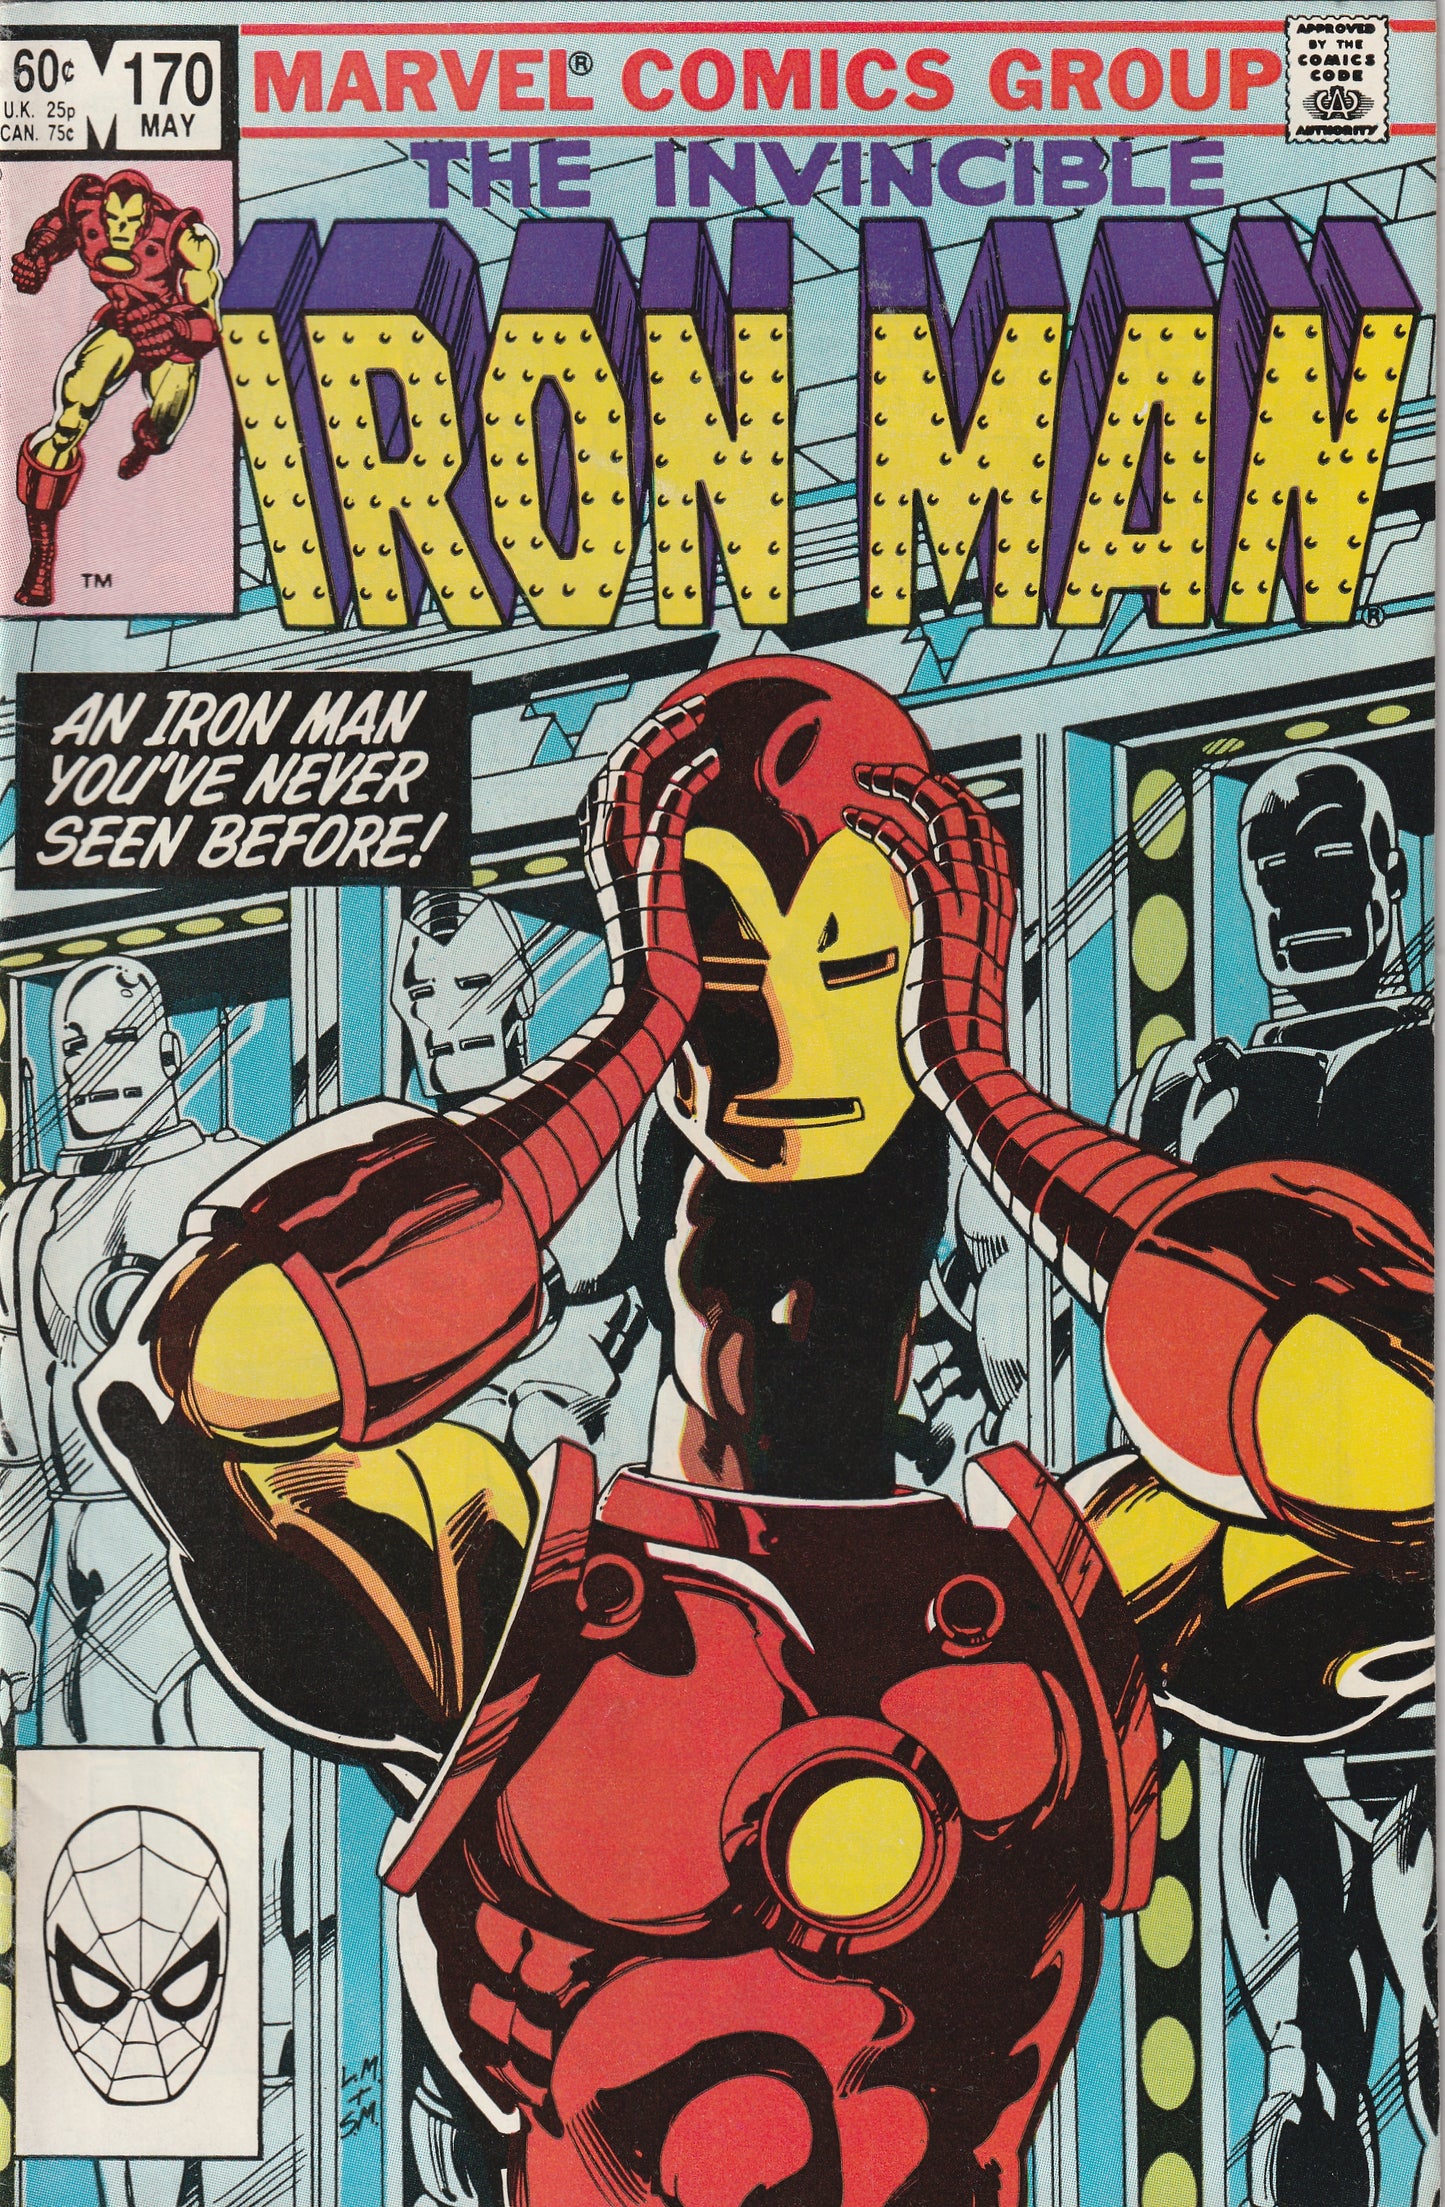 Iron Man #170 (1983) - James Rhodes as Iron Man